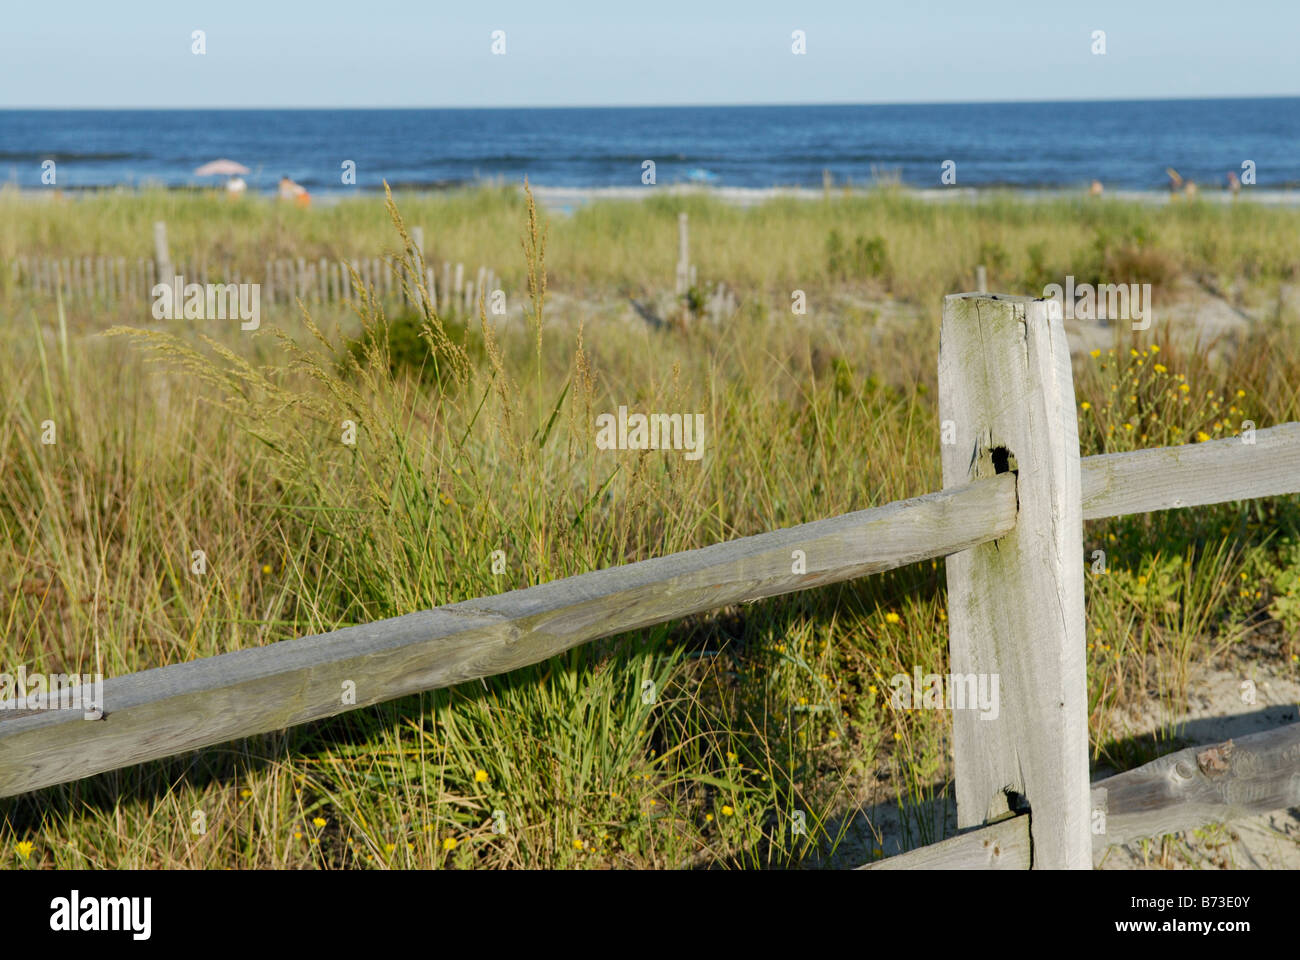 Plage avec herbes protégées sur les dunes pour stabilzation et la préservation de l'érosion, Avalon, New Jersey. Banque D'Images